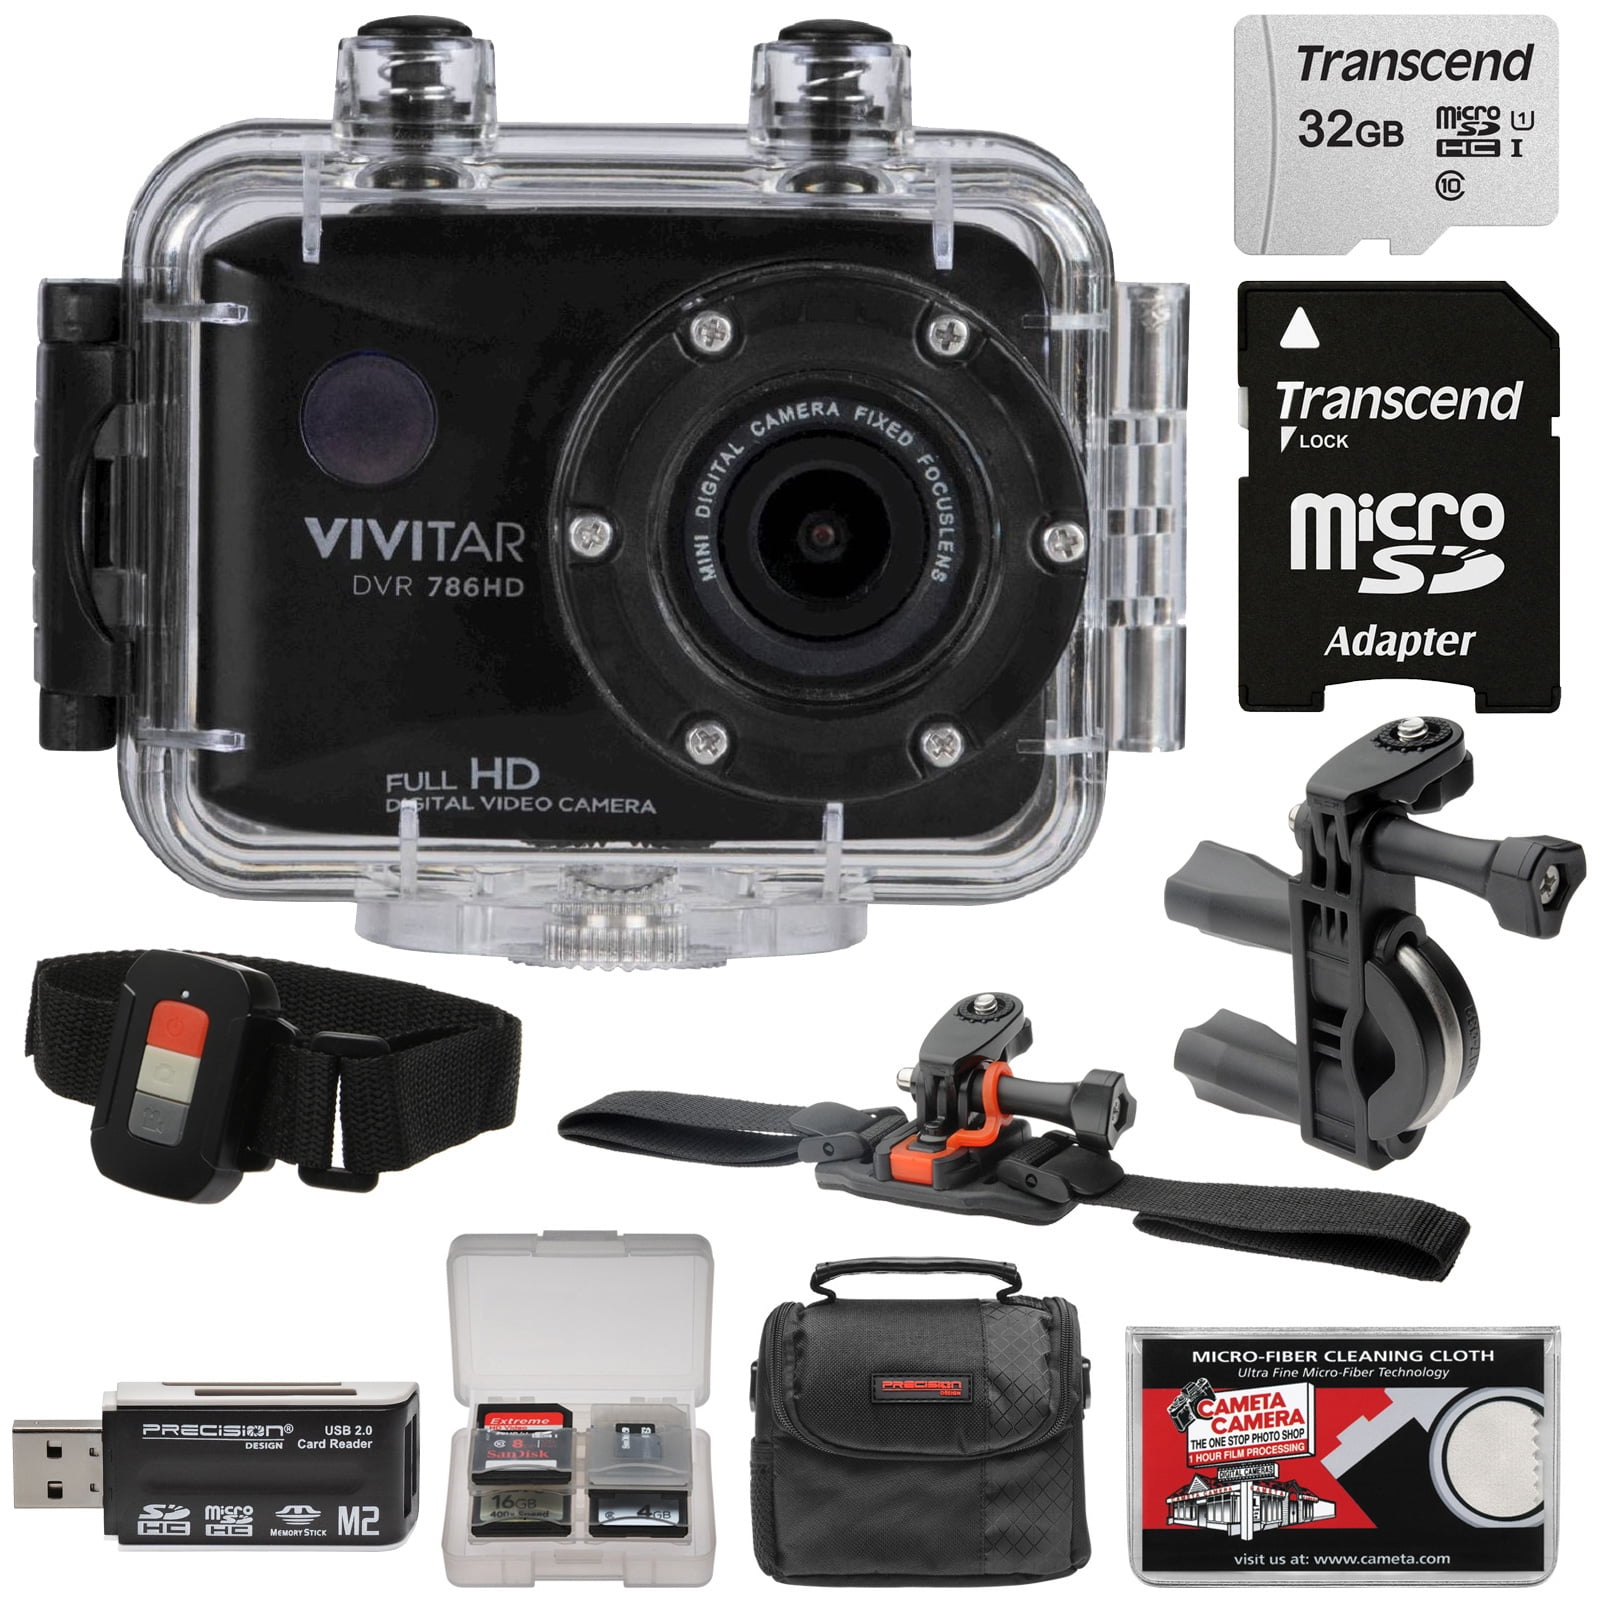 vivitar action camera black 1080p hd